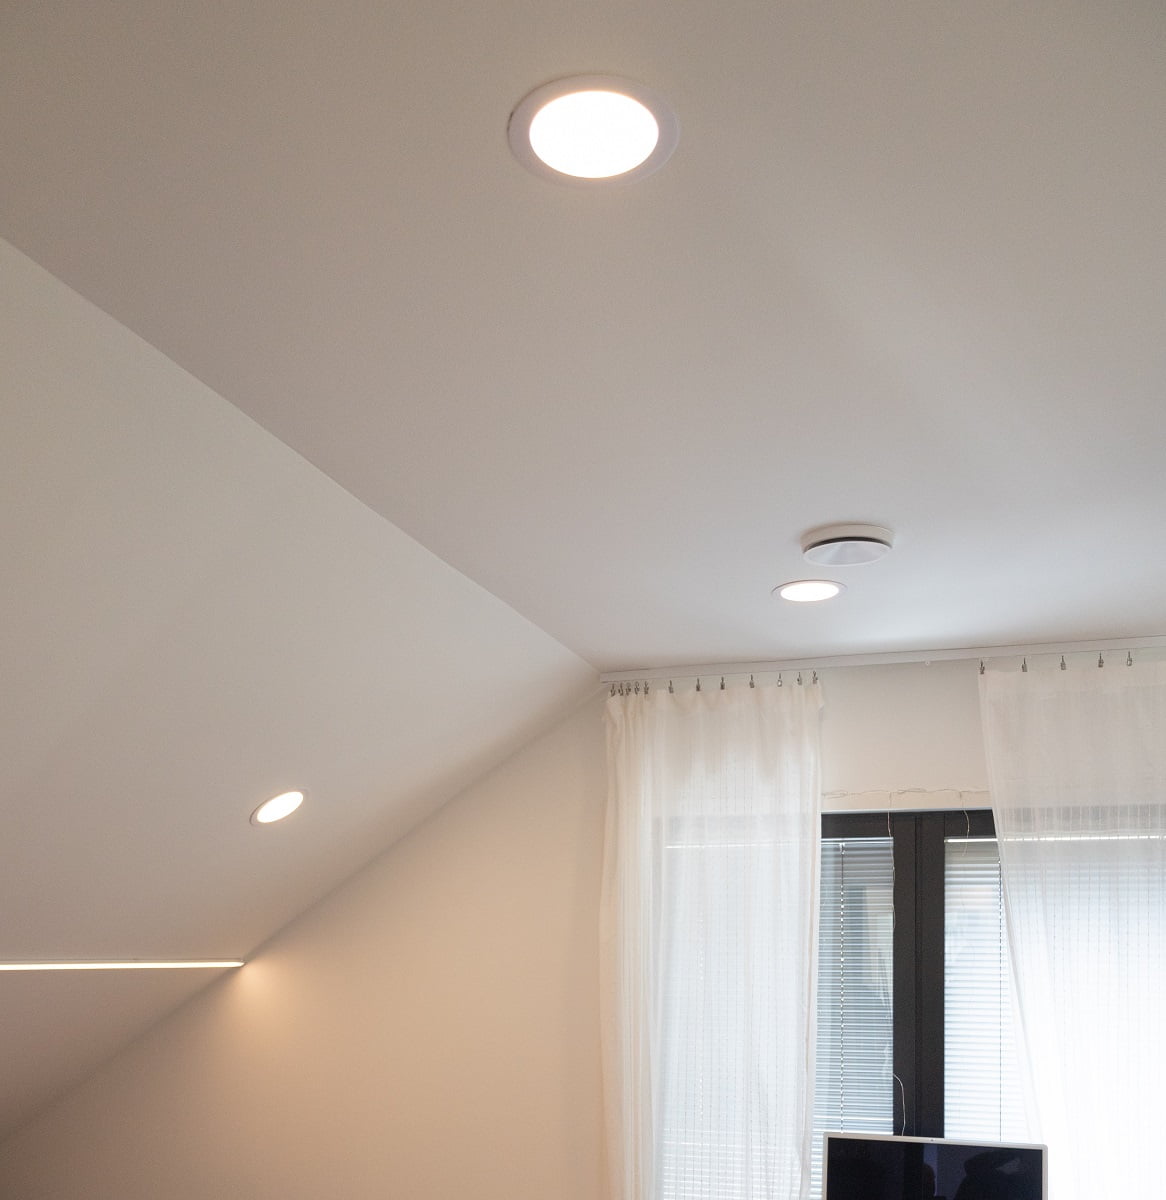 Makuuhuoneissa tasaisen katon ala on rajallinen, niin osa valaisimista on sommiteltu katon laskevalle osuudelle huolehtimaan että huoneen reunat eivät jää pimeäksi. ©LedStore